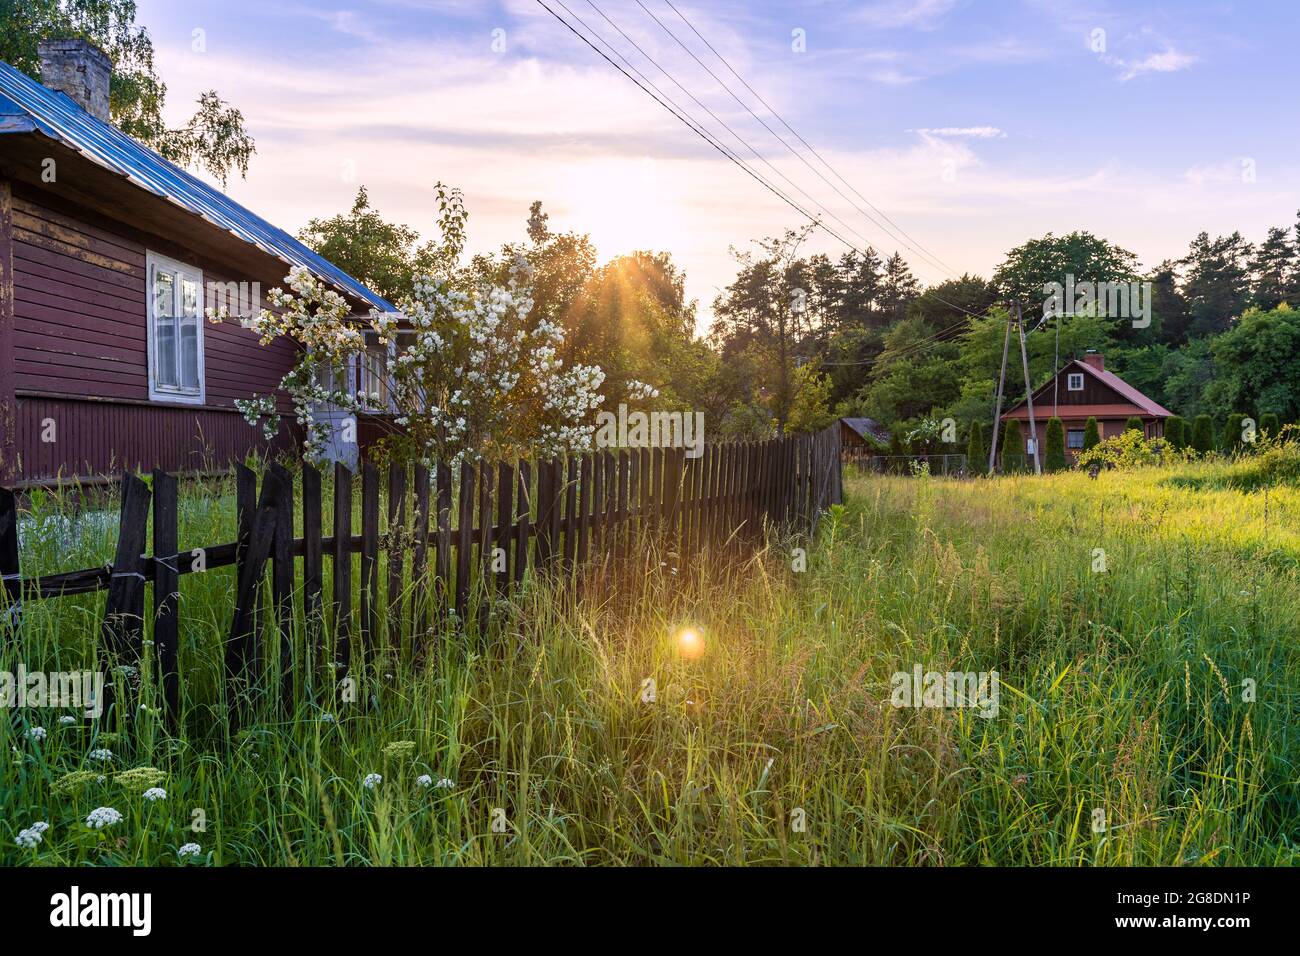 Schönes, traditionelles, polnisches Dorf bei Sonnenuntergang. Alte, hölzerne Gebäude neben grüner, frischer Wiese. Idyllischer Blick auf die Landschaft. Krasnobród, Roztocz Stockfoto